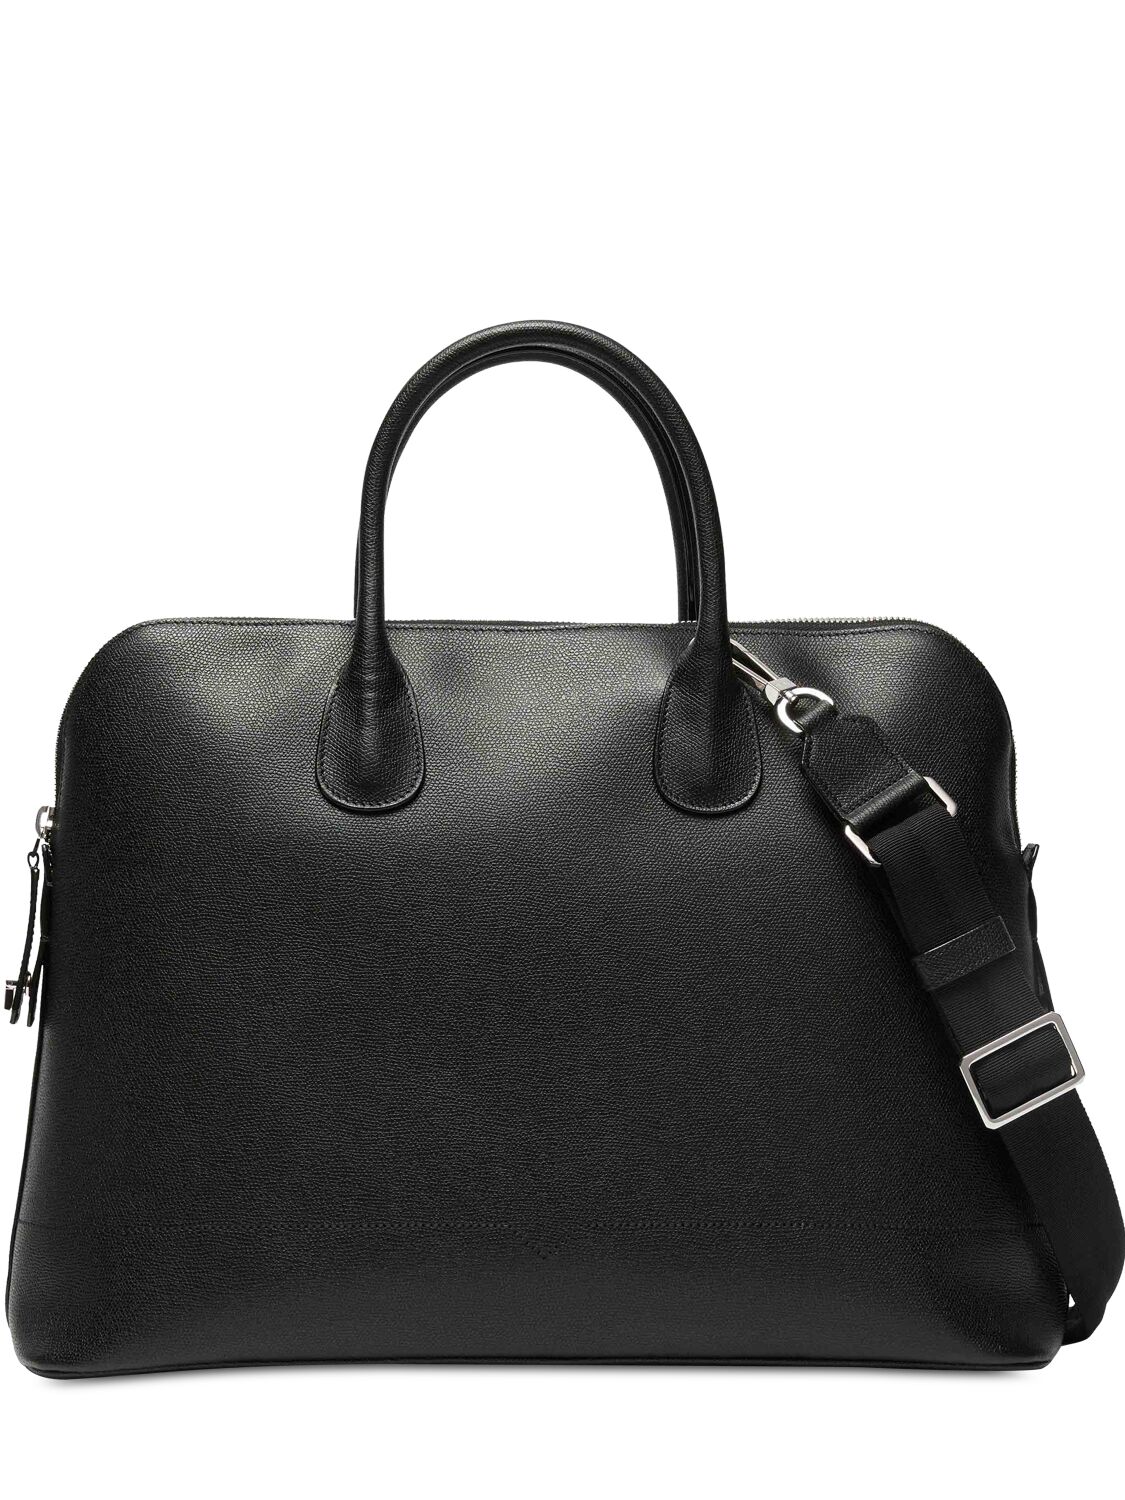 Image of Sacca Leather Work Bag